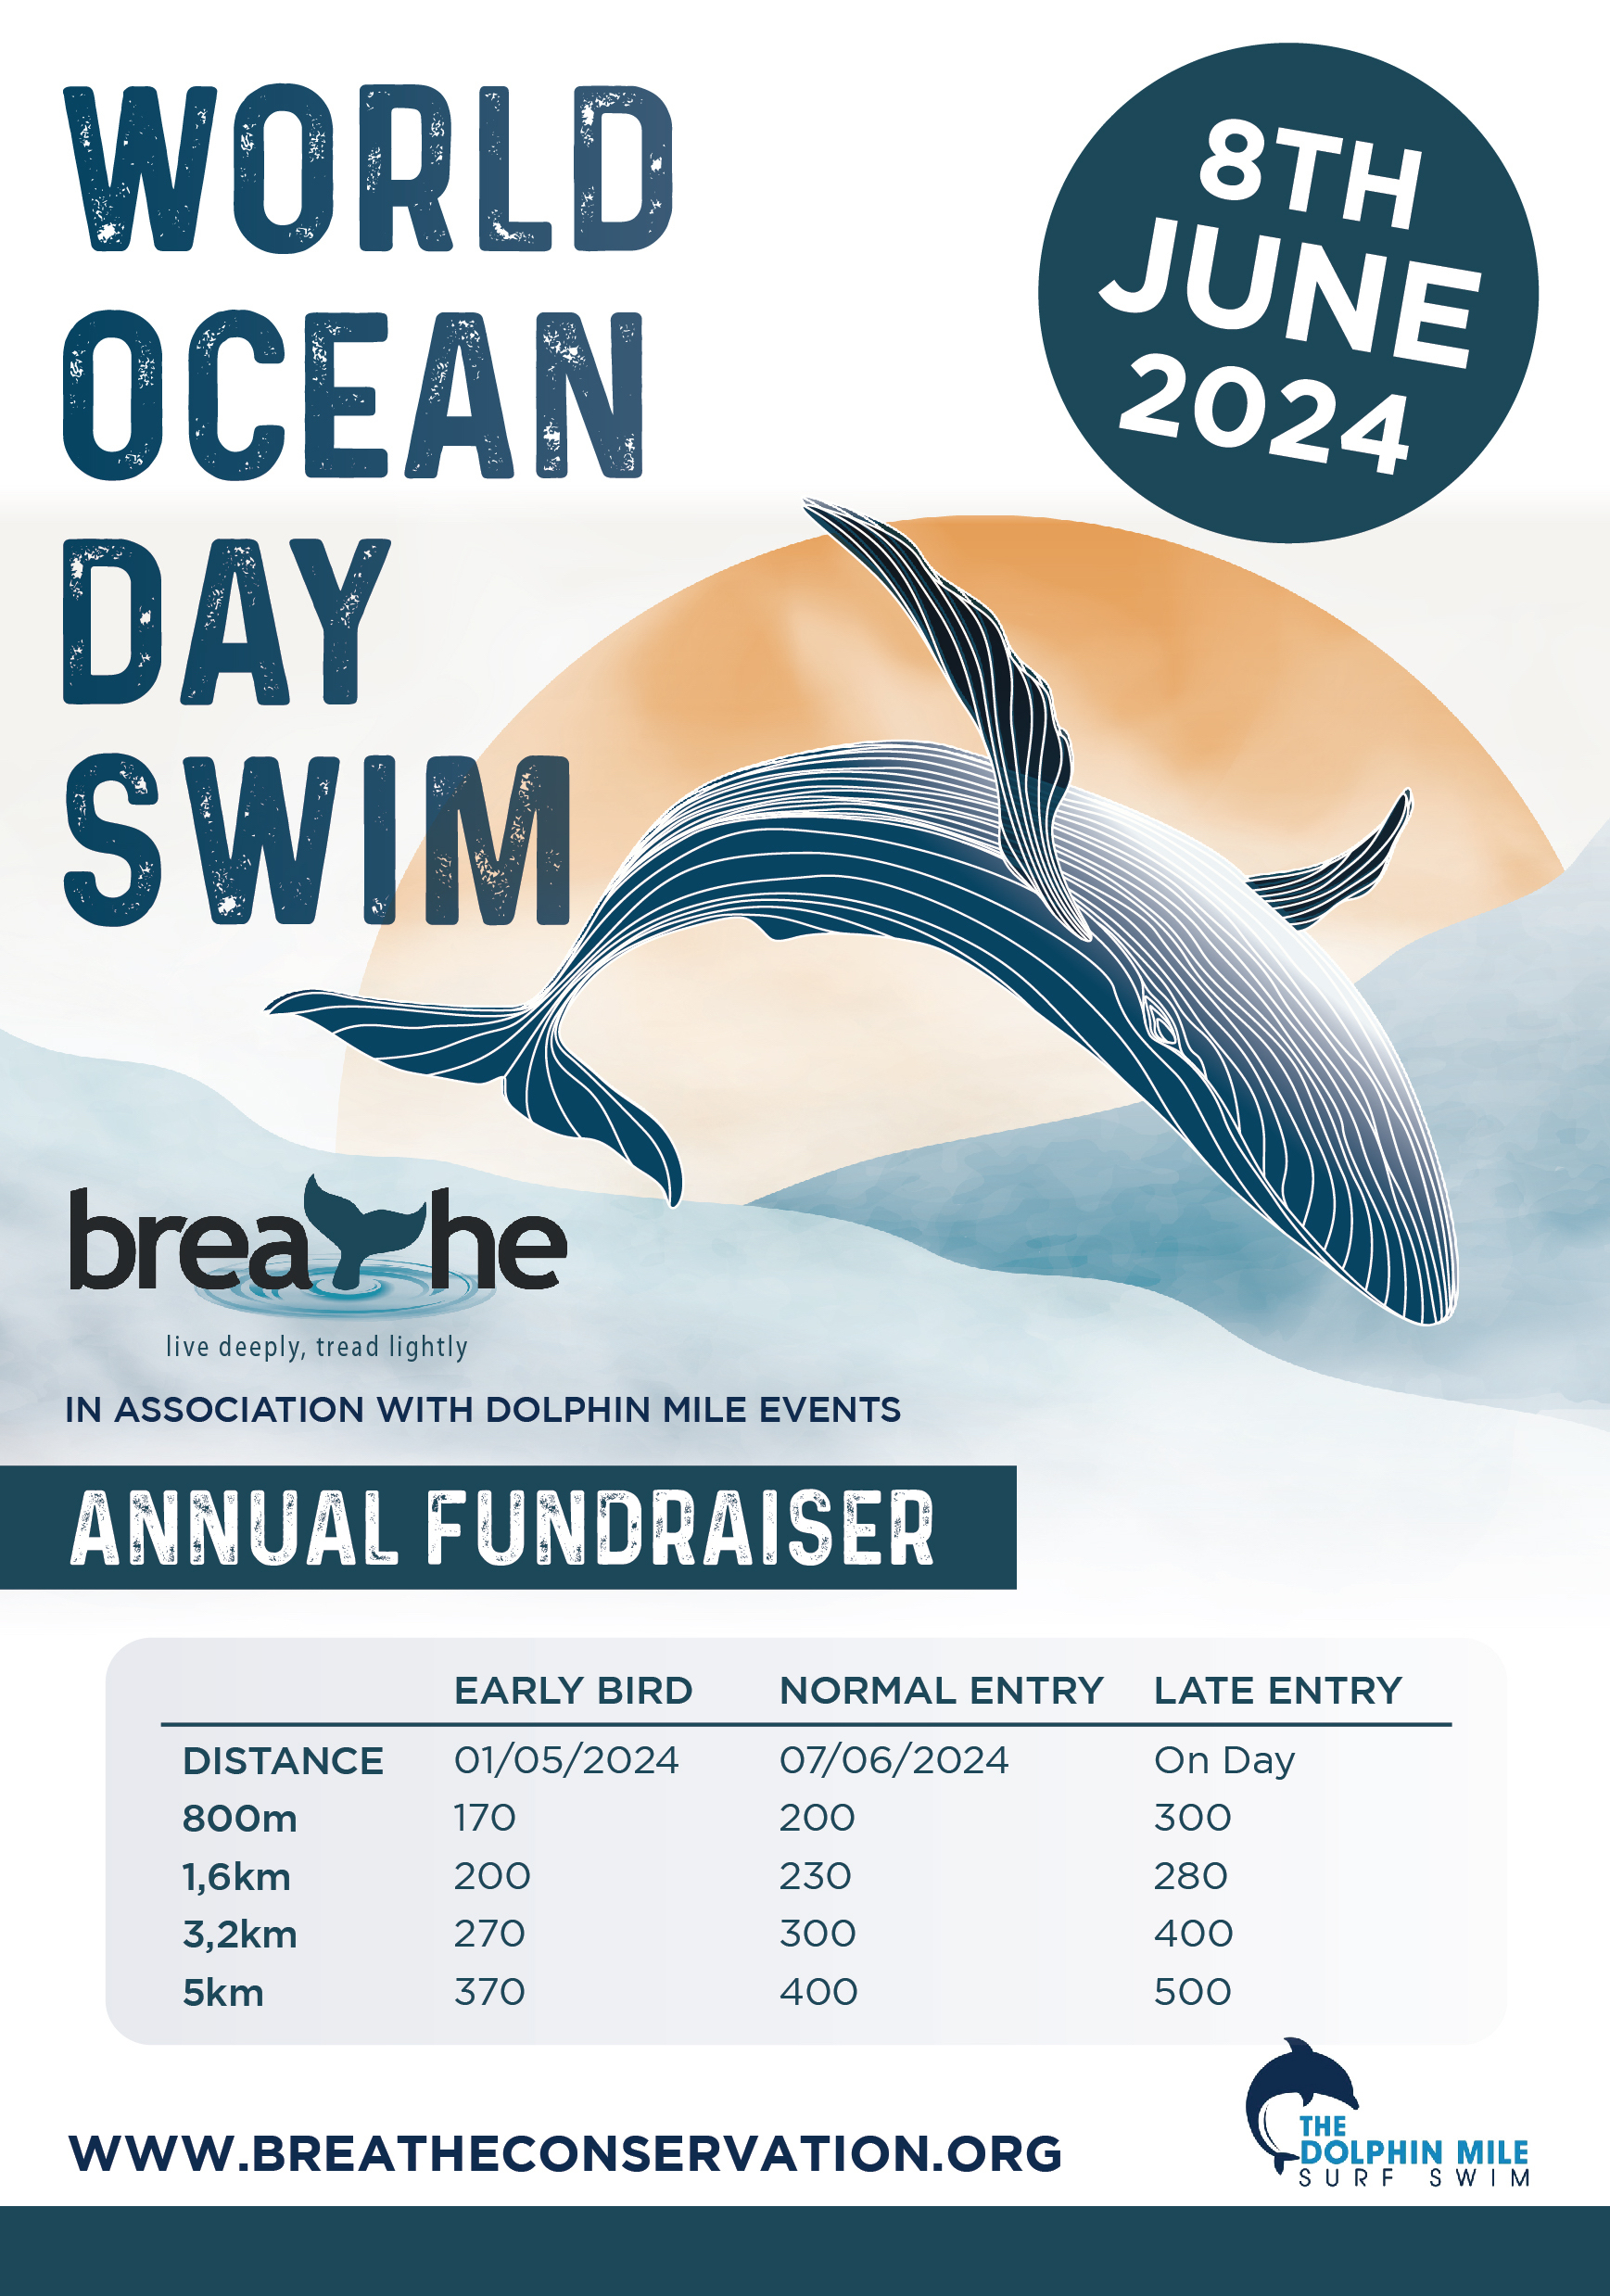 World Oceans Day Swim